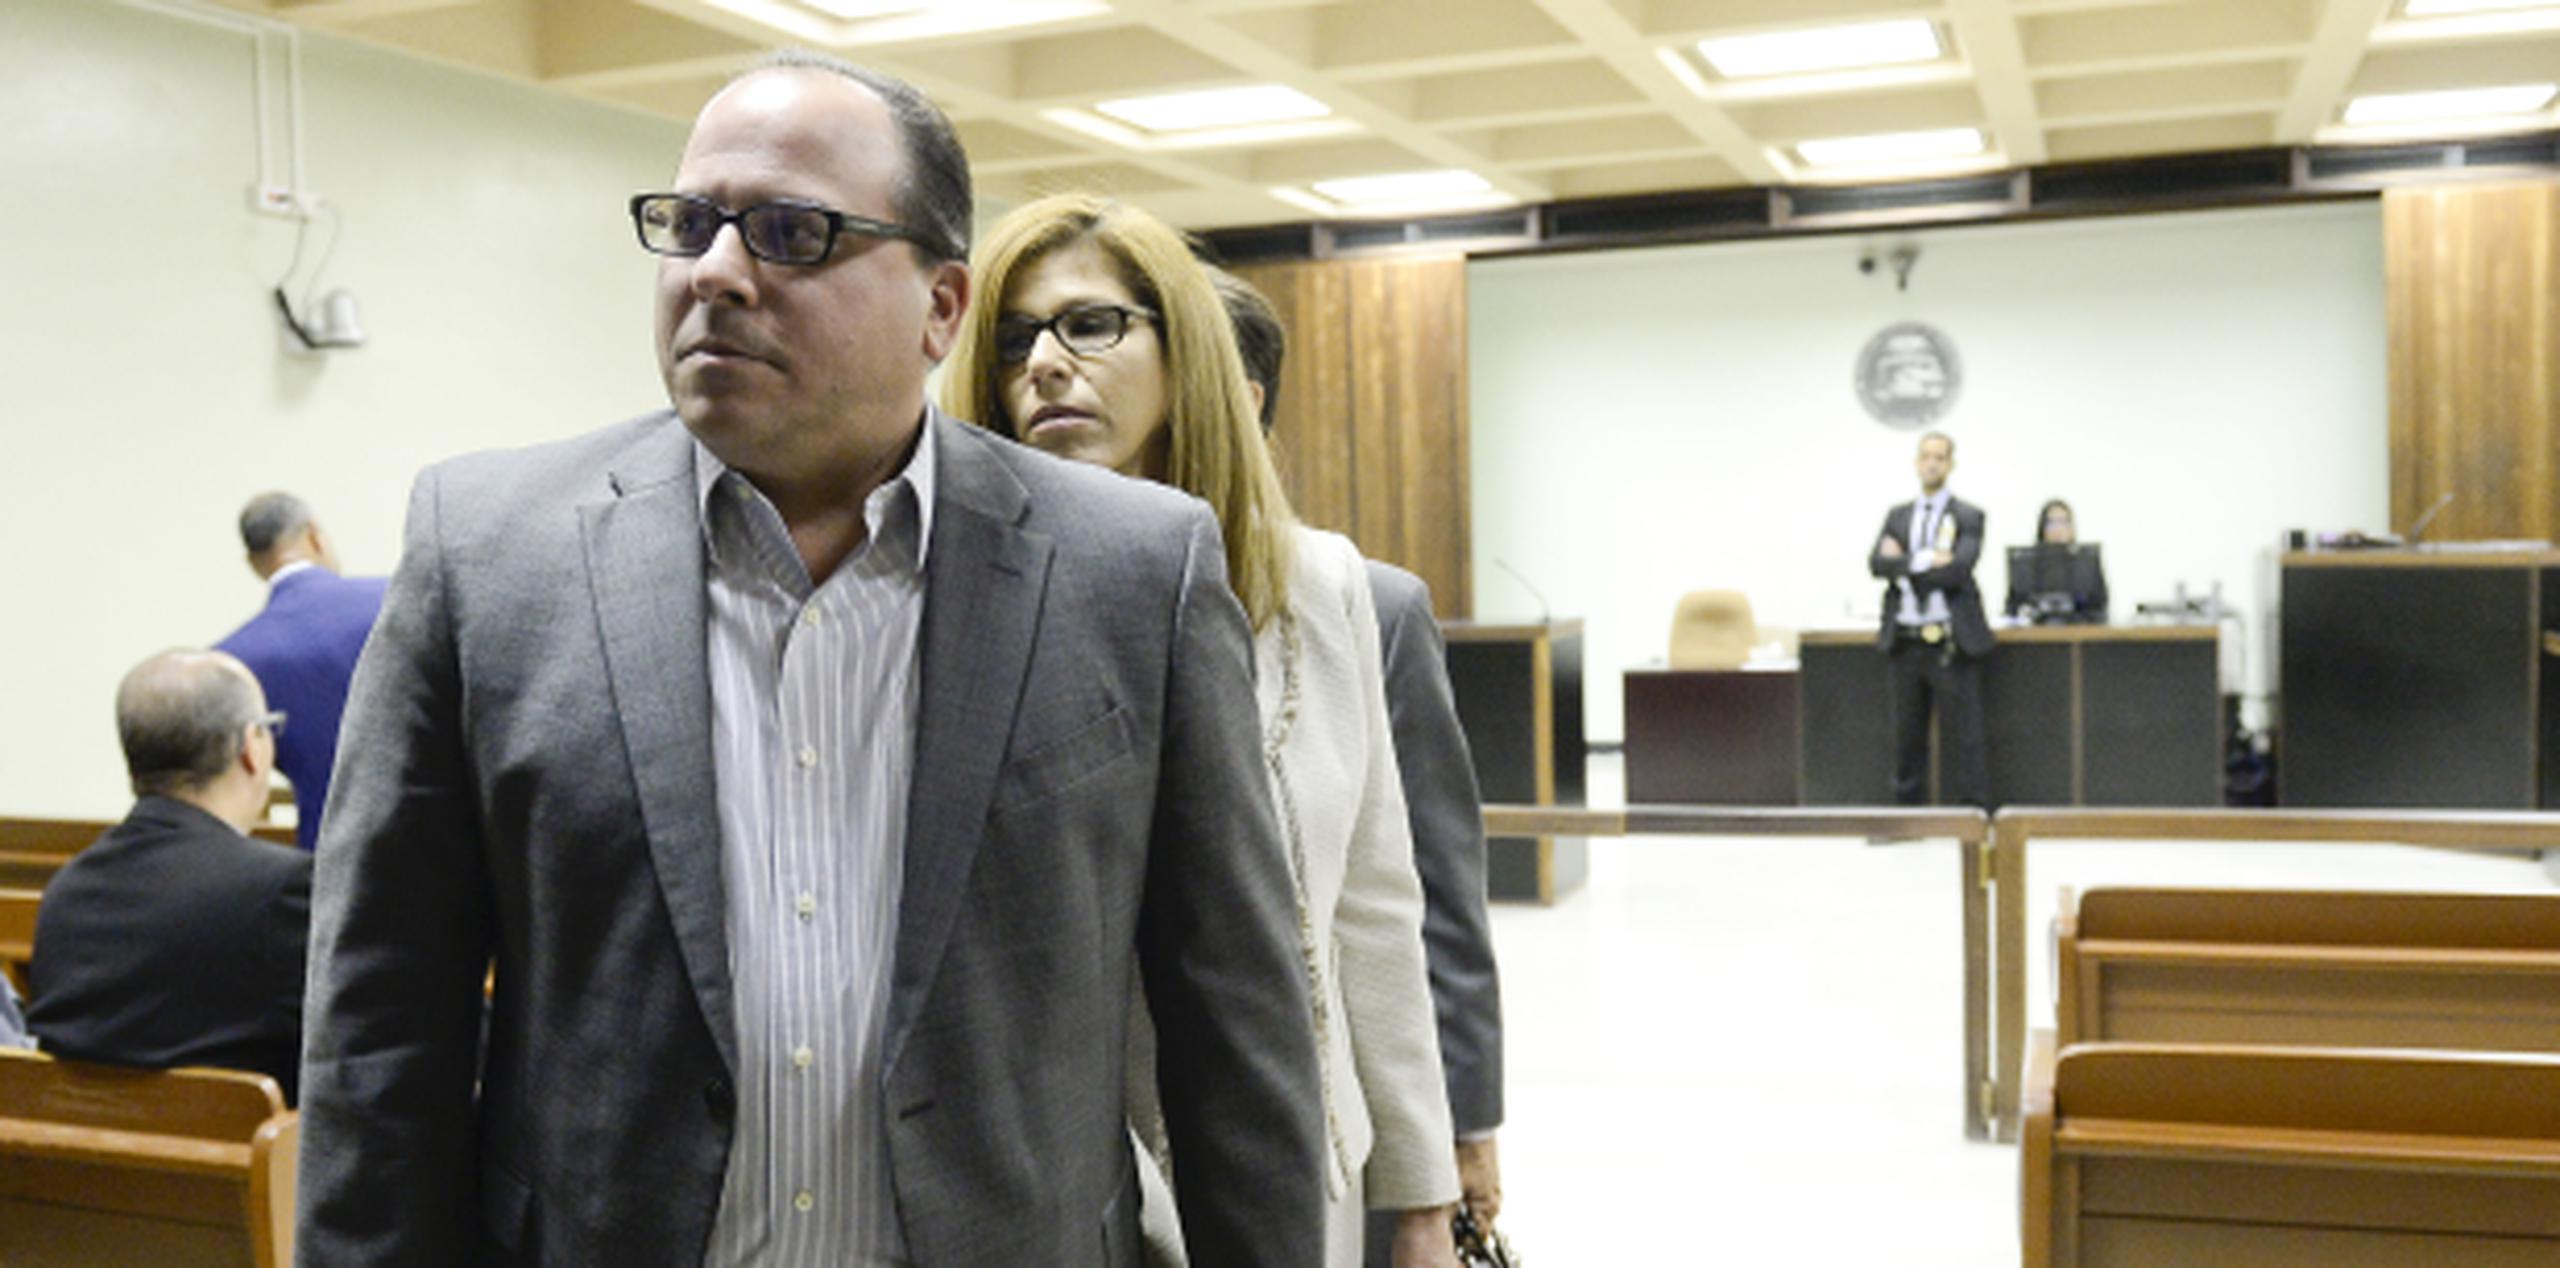 El abogado Ángel Muñoz Noya es parte de un grupo de personas acusadas con relación al caso de corrupción presentado contra Jaime Perelló (en la foto). (Archivo)